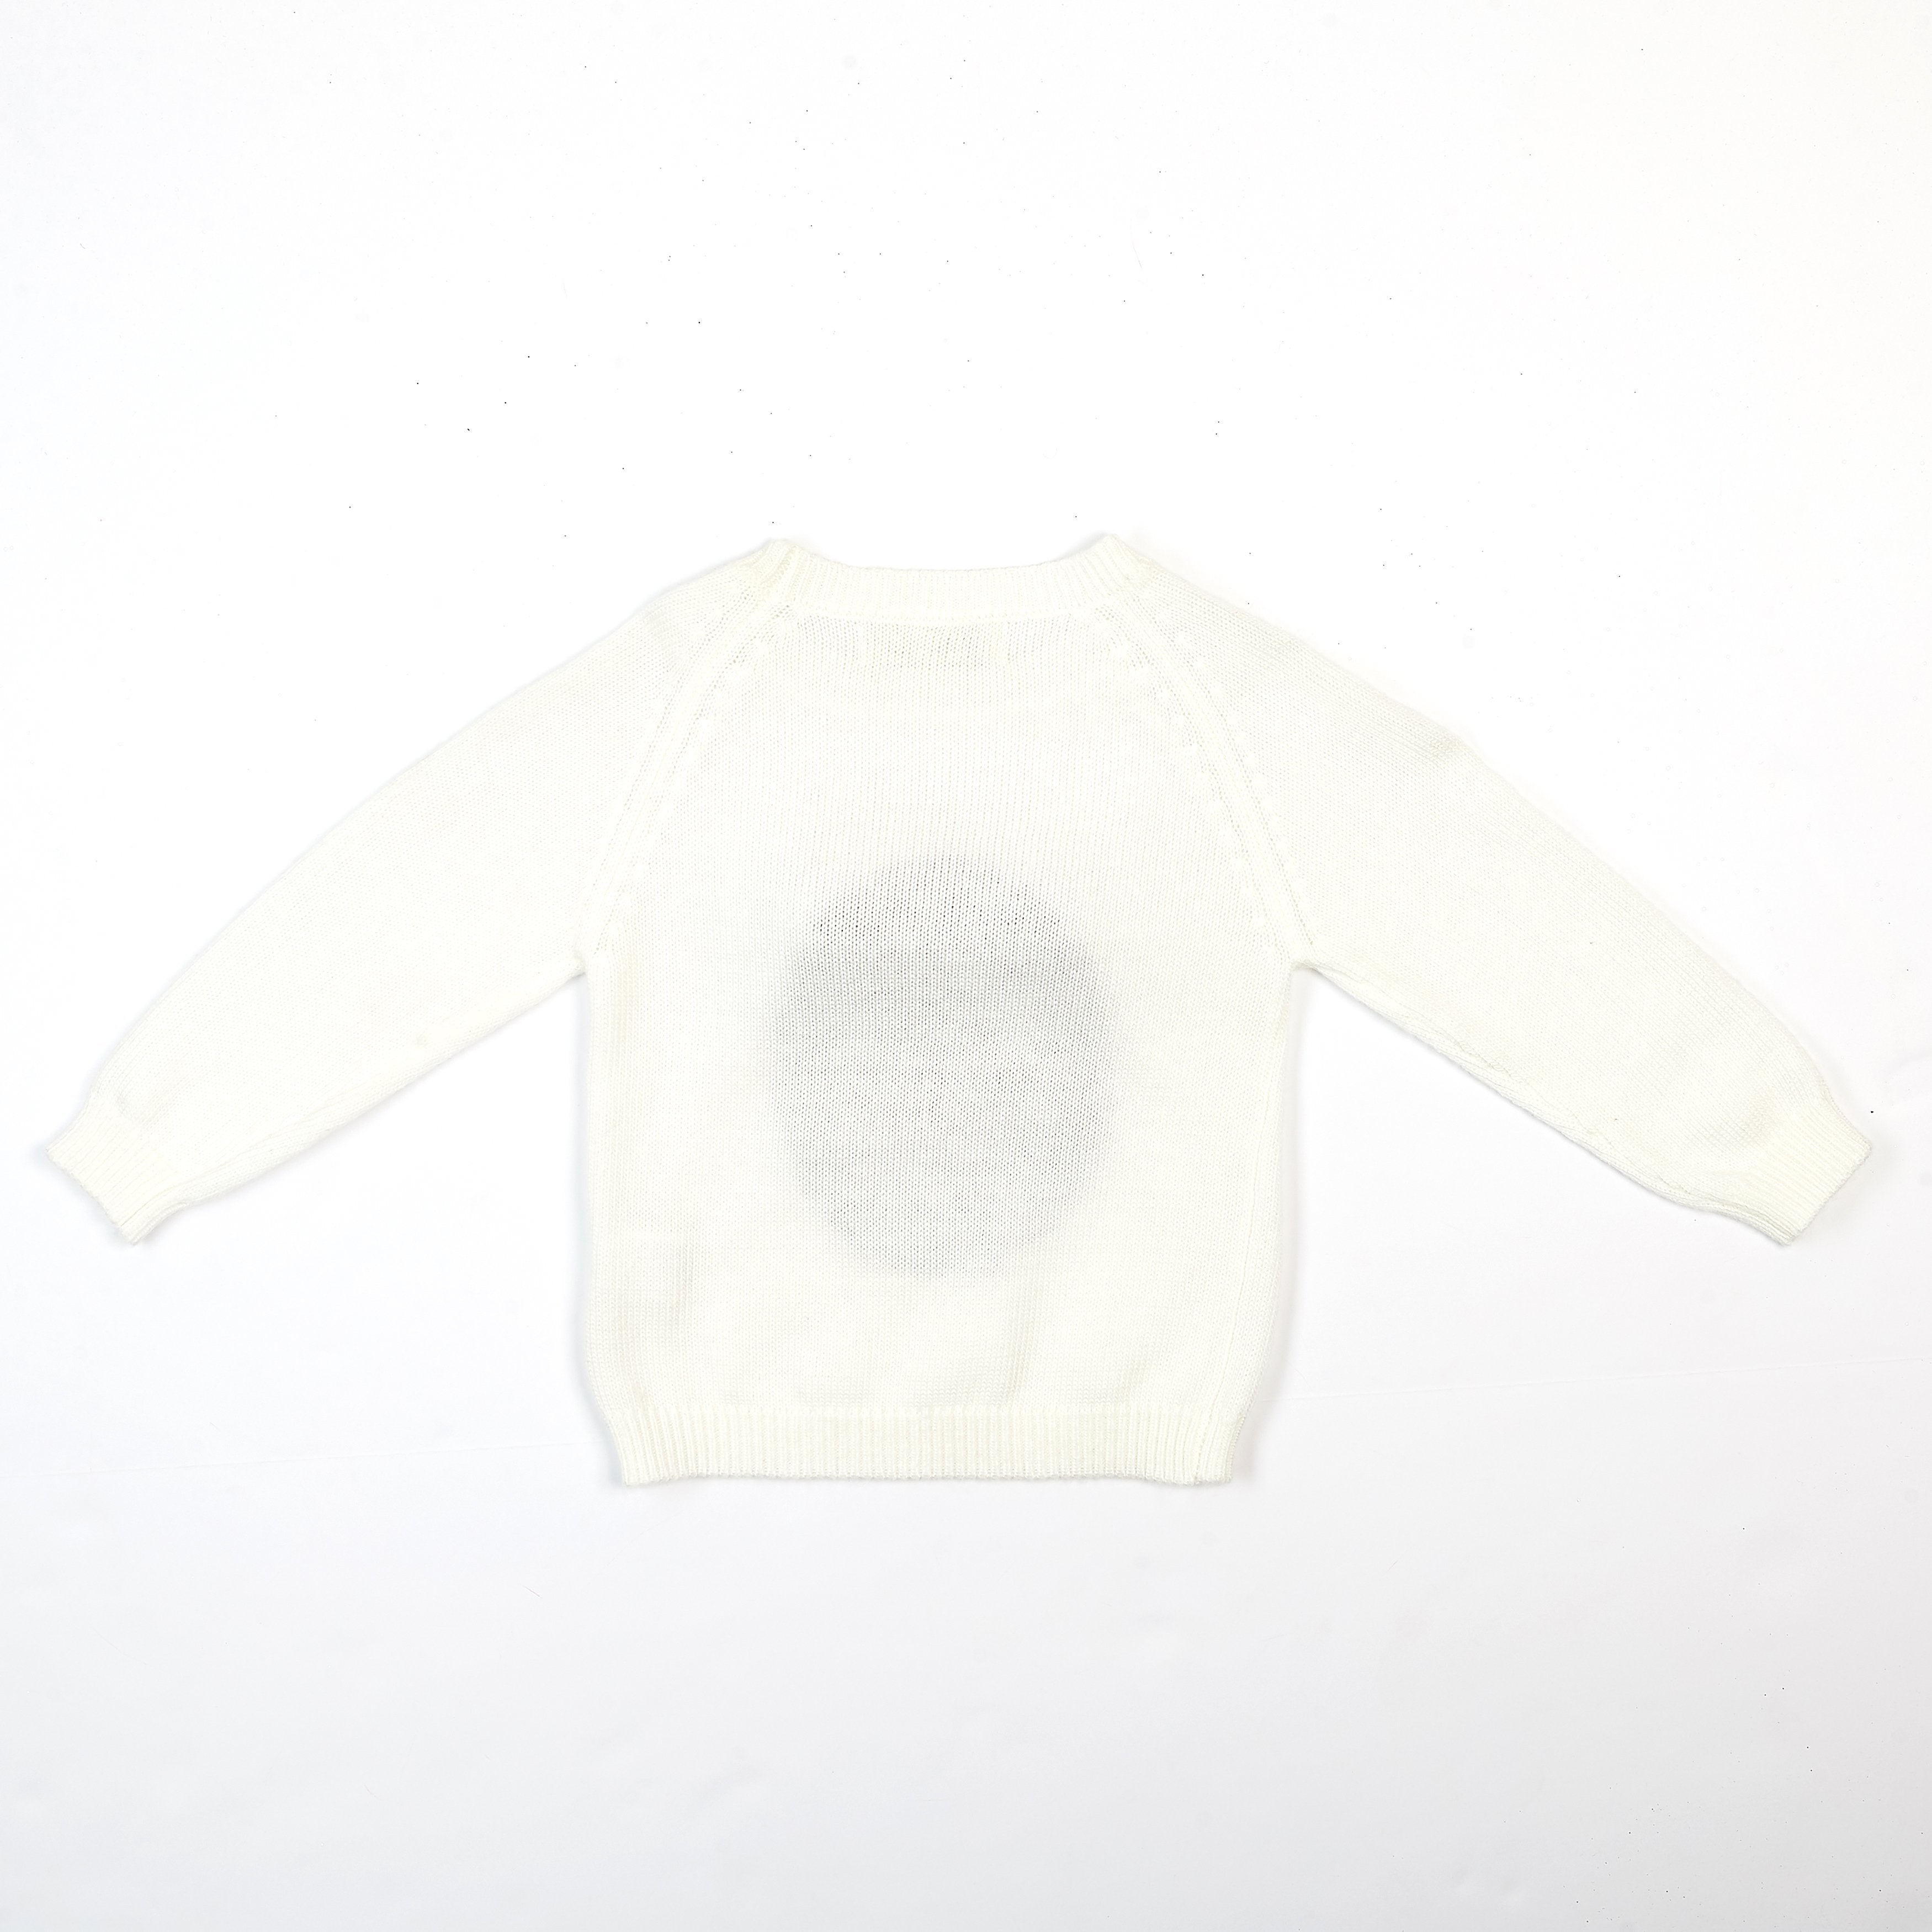 Bear Sweater - Doe a Dear 